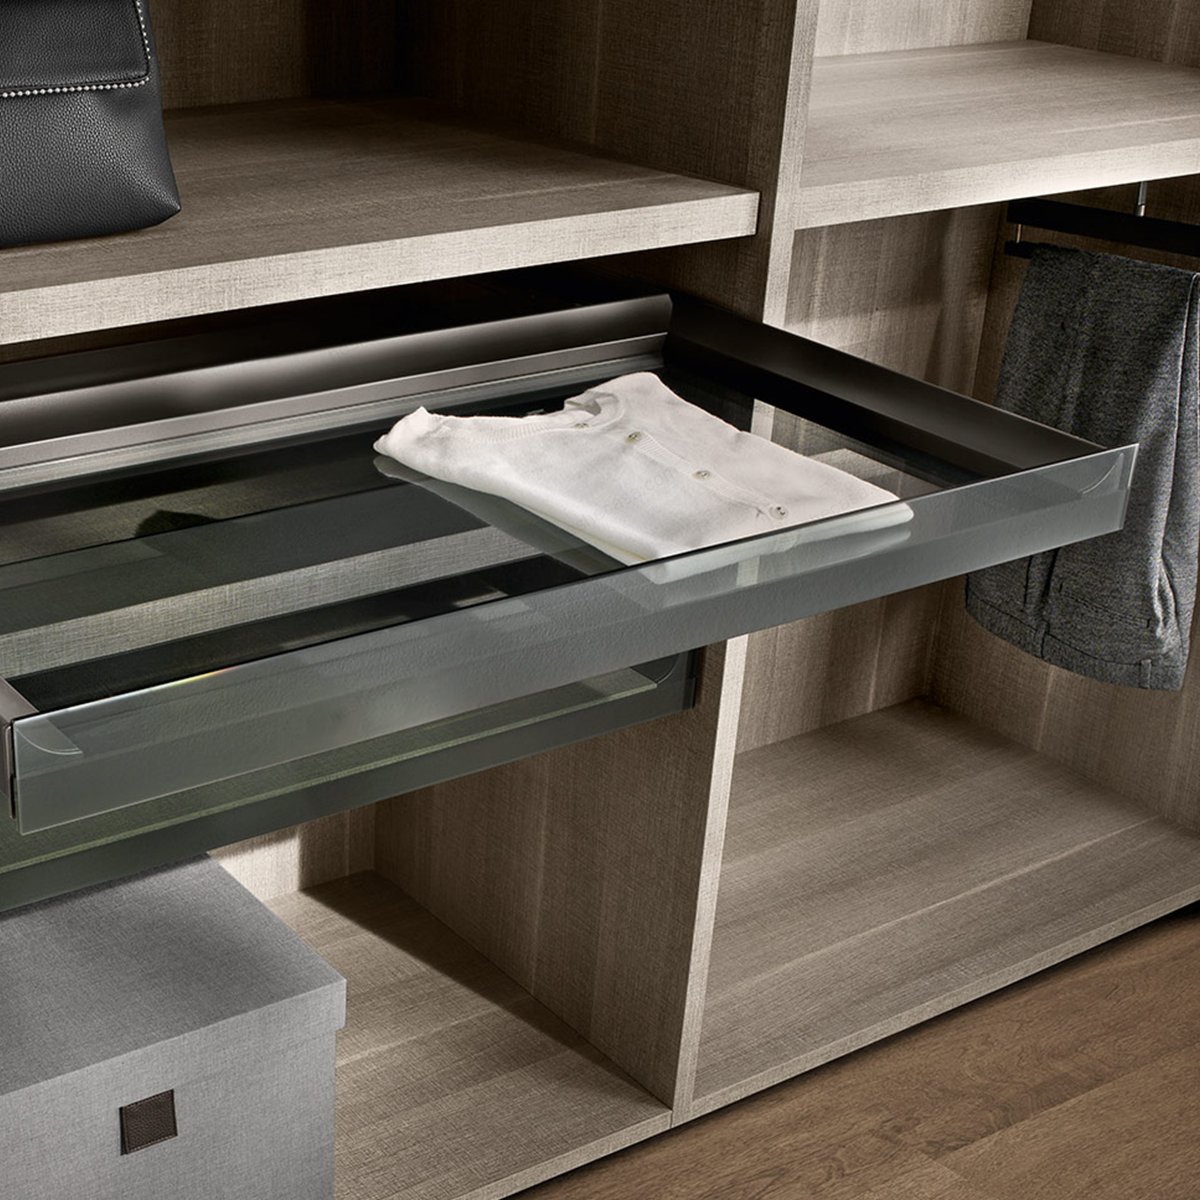 3 sided drawer H 52 铝制三侧抽屉 用于正面玻璃抽屉